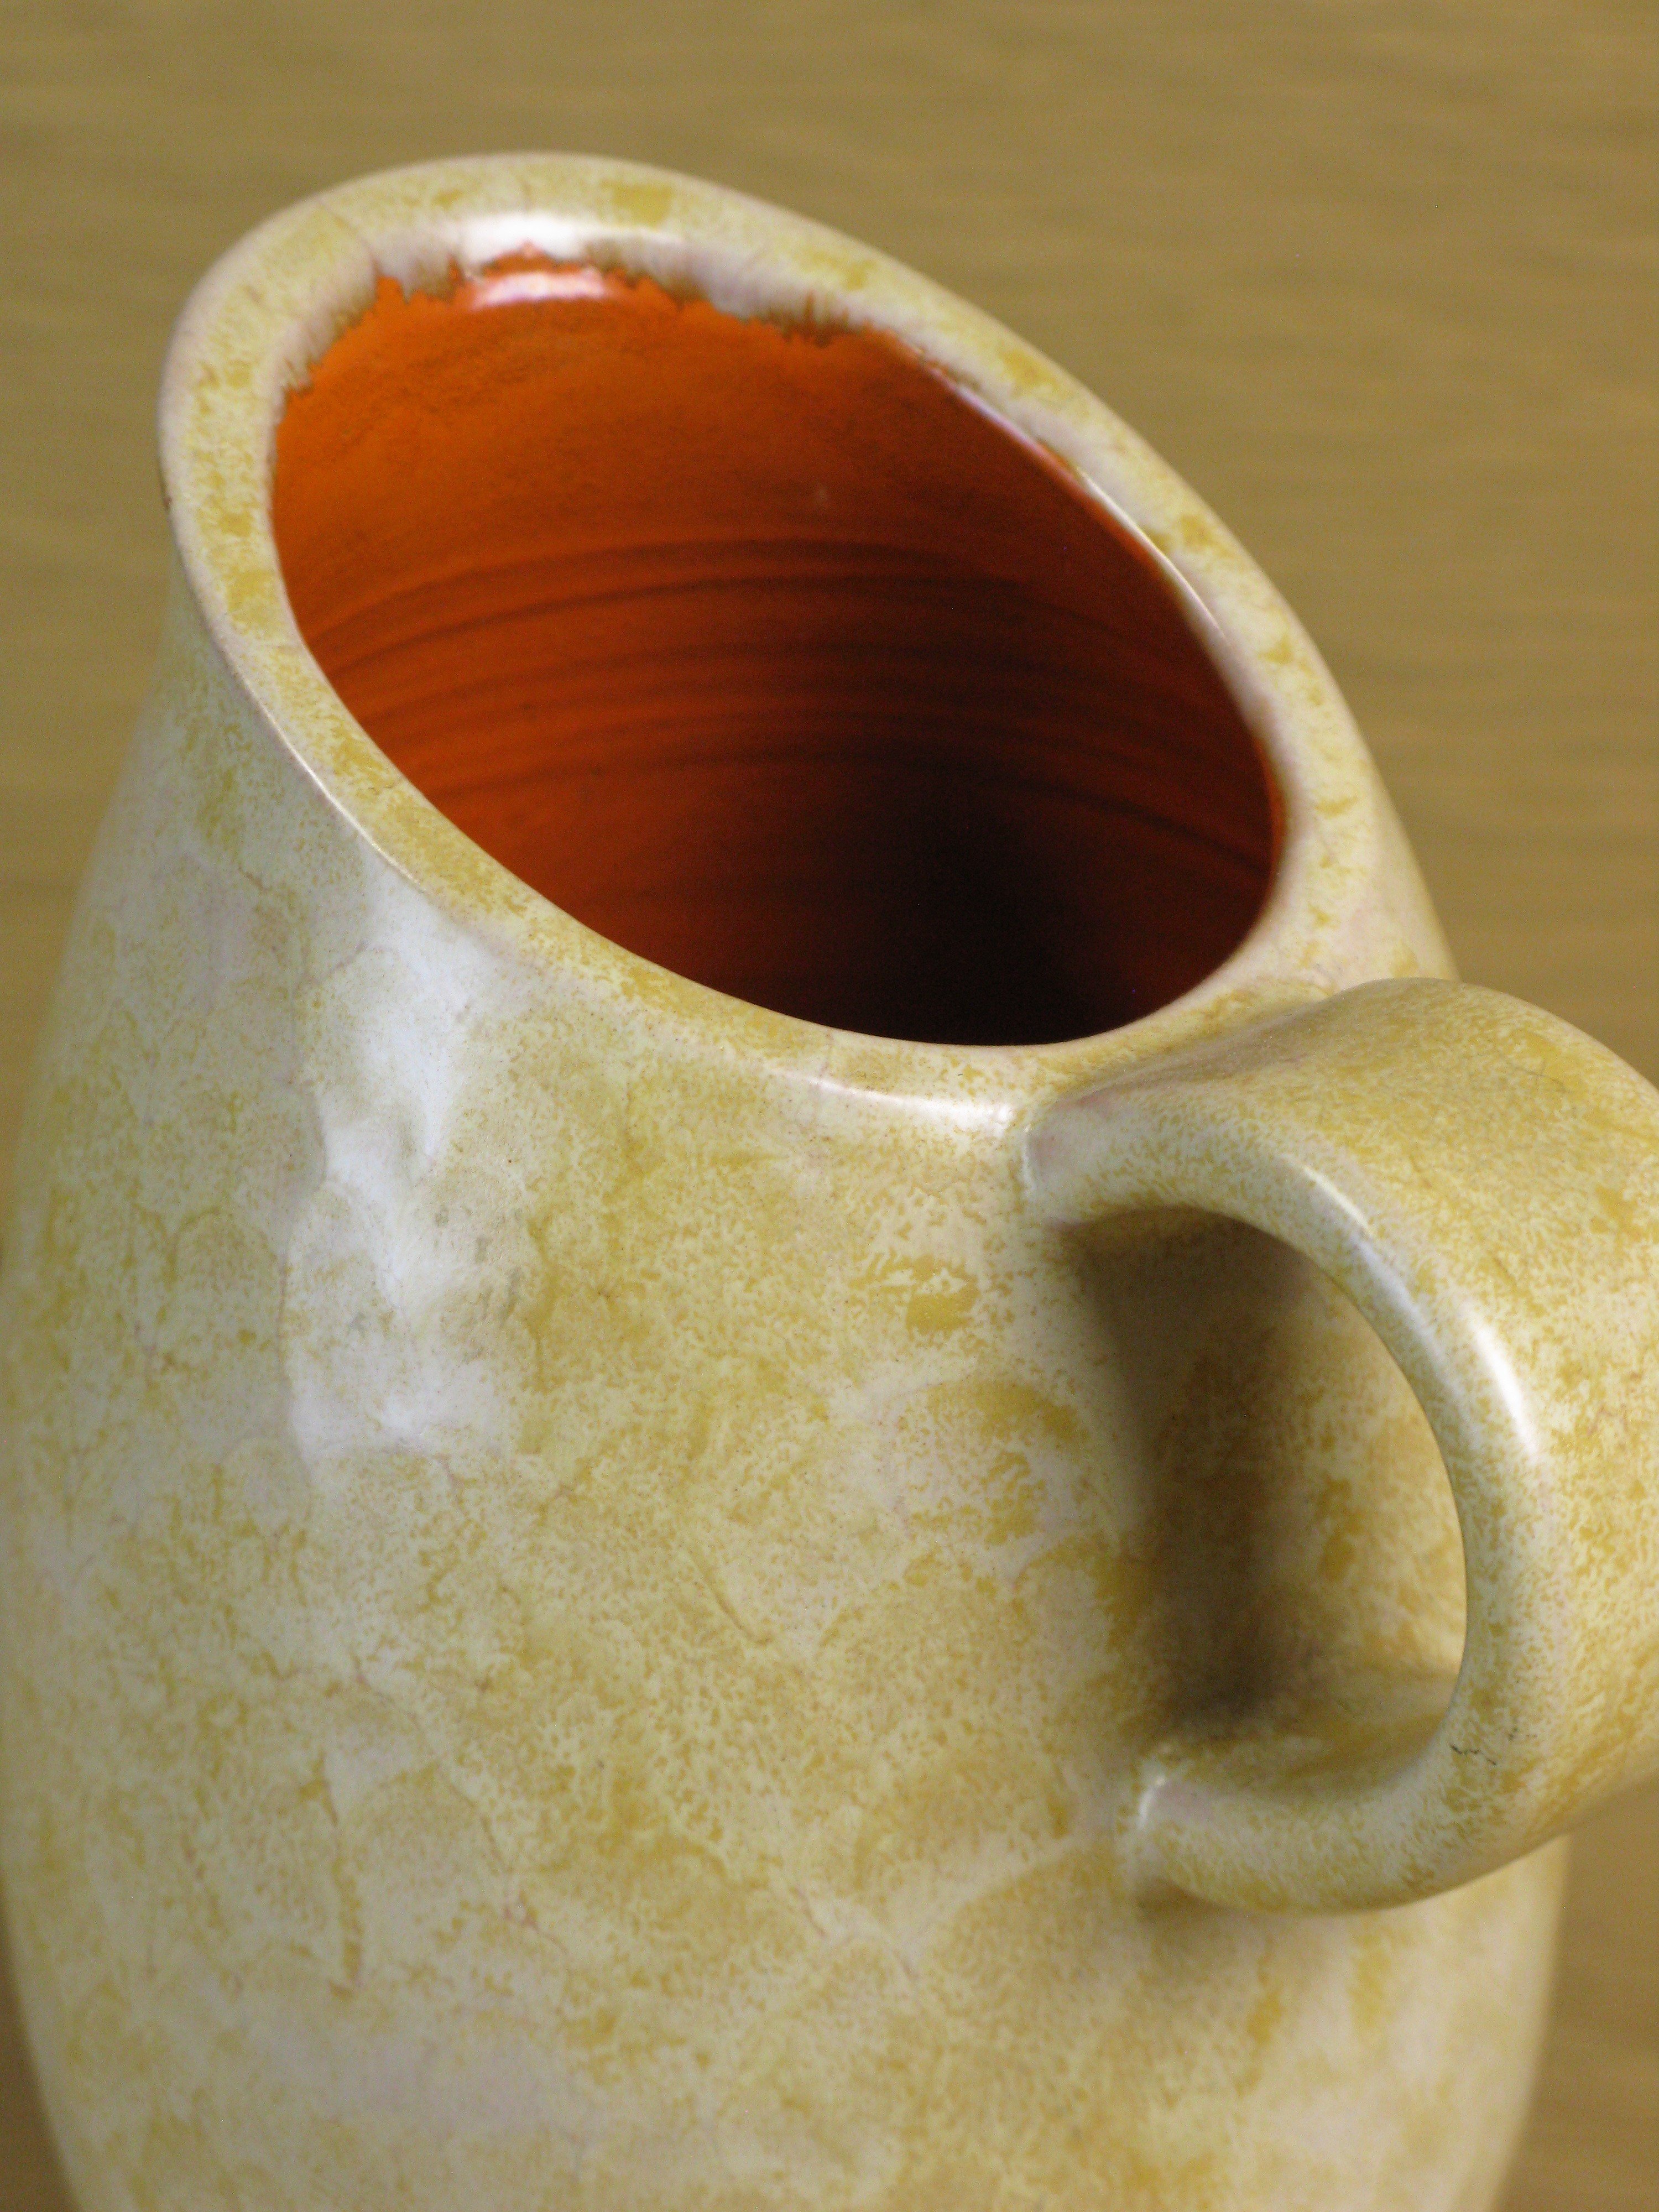 yellowish/orange pitcher 7